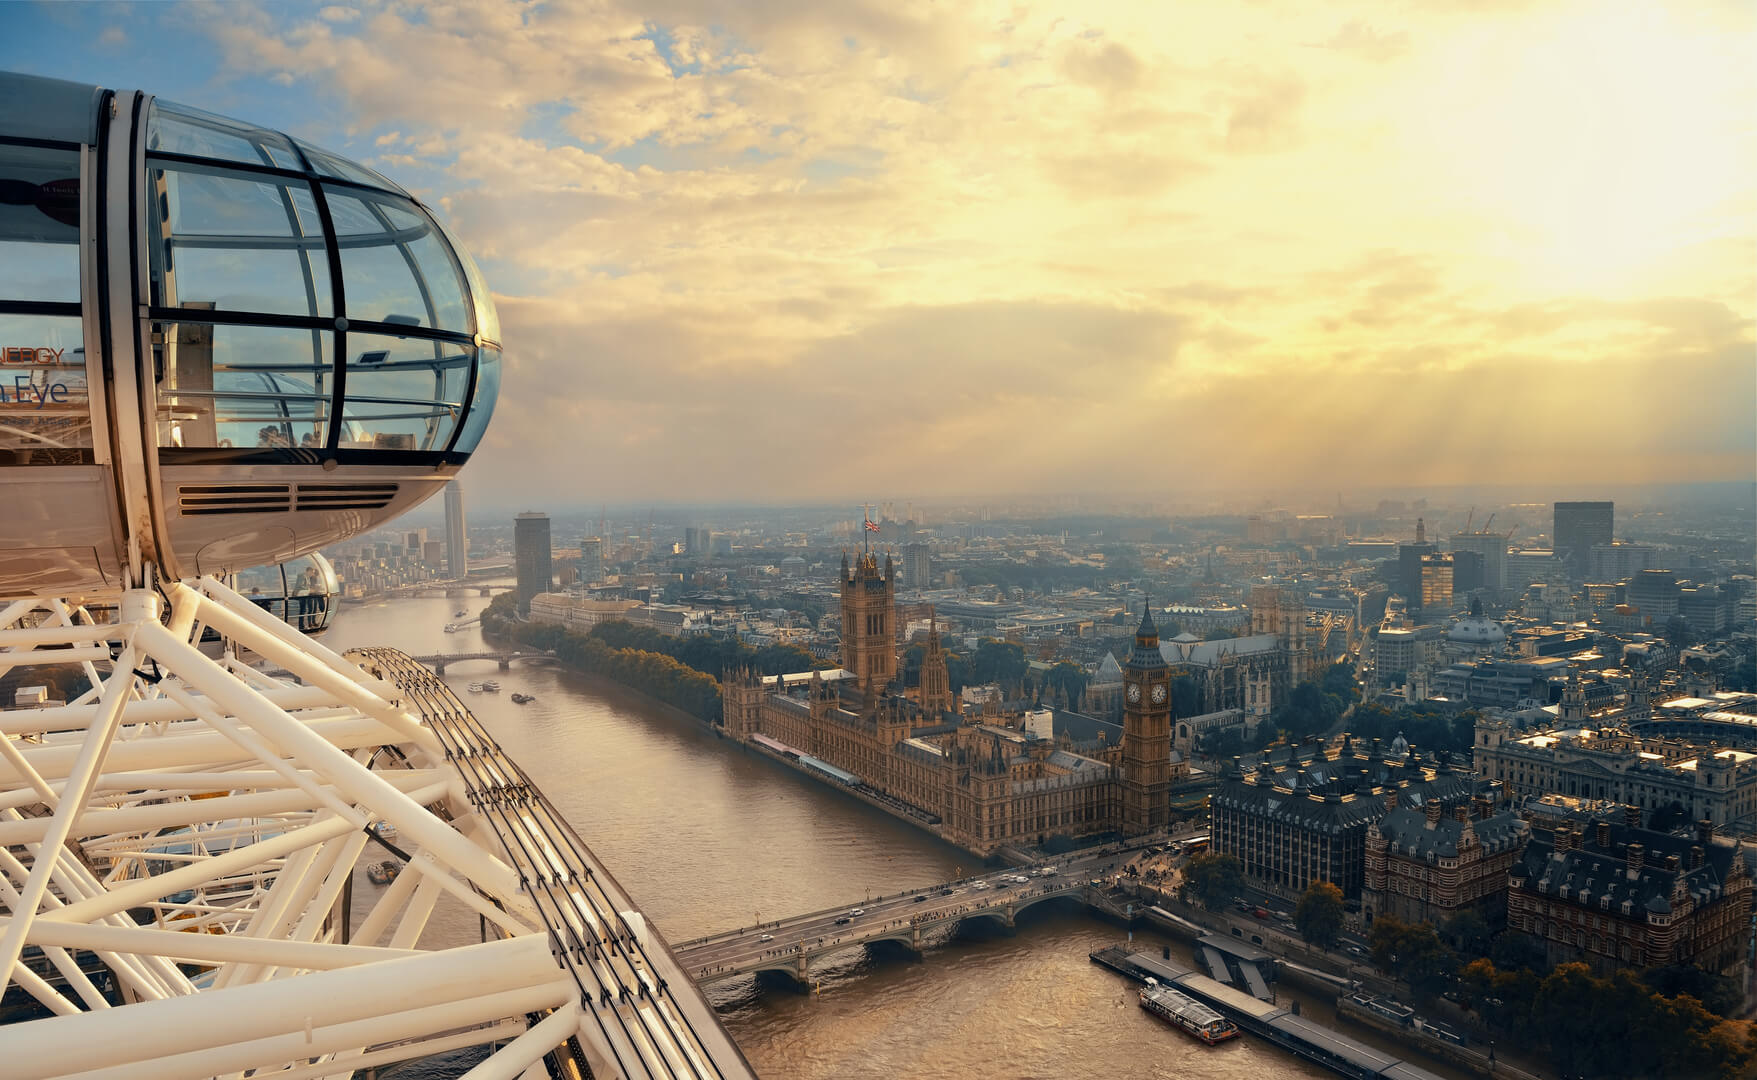 London Eye au-dessus de la Tamise, le 26 septembre 2013 à Londres, au Royaume-Uni. Il s'agit de la plus haute grande roue d'Europe et de l'attraction touristique payante la plus populaire au Royaume-Uni.